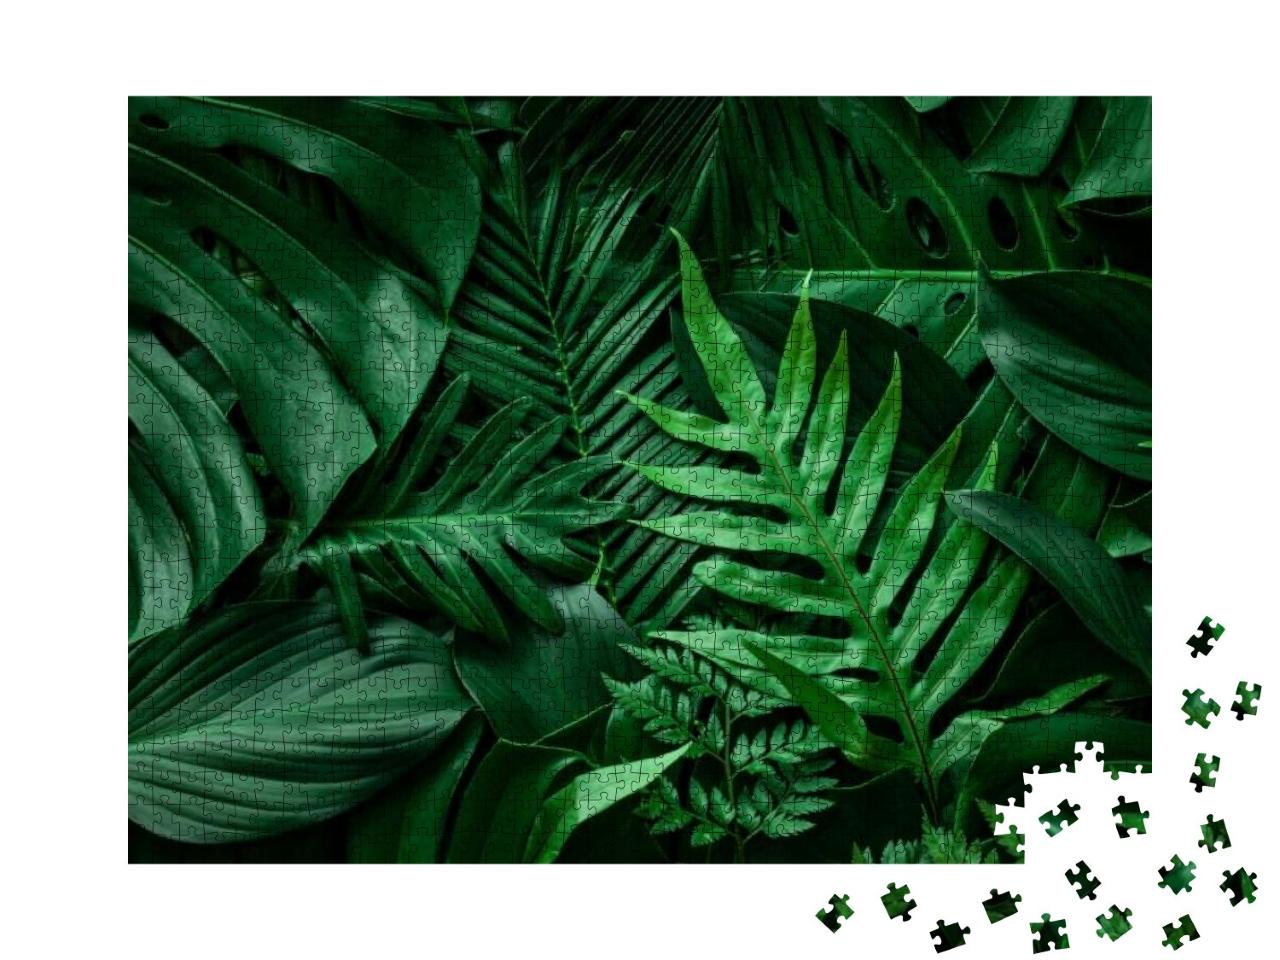 Puzzle 1000 Teile „Grünes Blatt und Palmen“